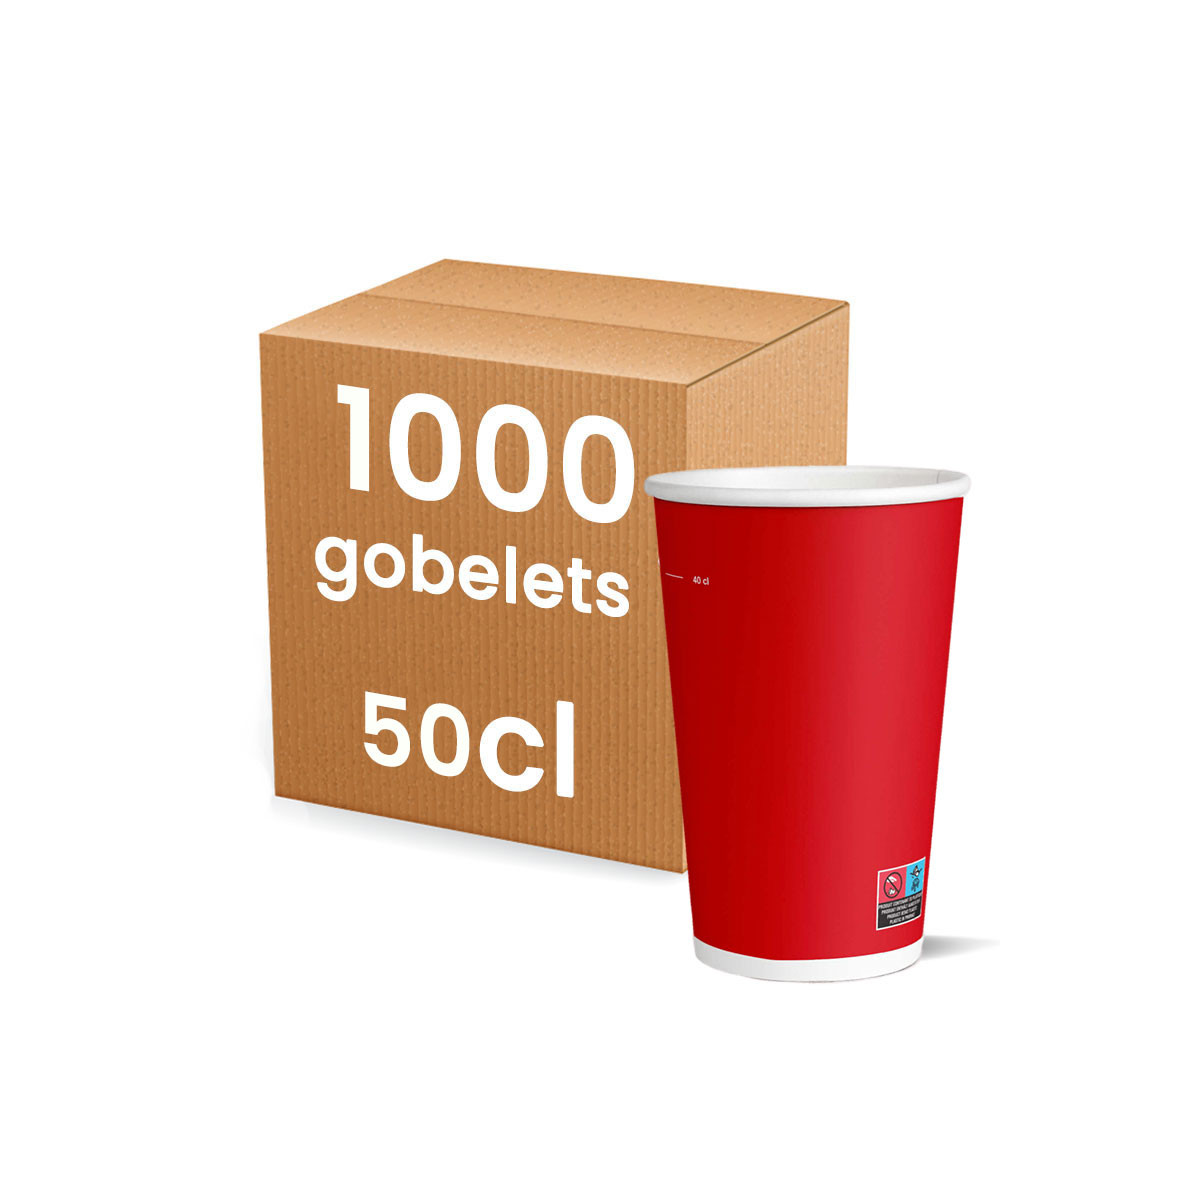 Gobelet en carton Enjoy pour boissons froides 50 cl - Lot de 50 -  Gobeletsfavorable à acheter dans notre magasin